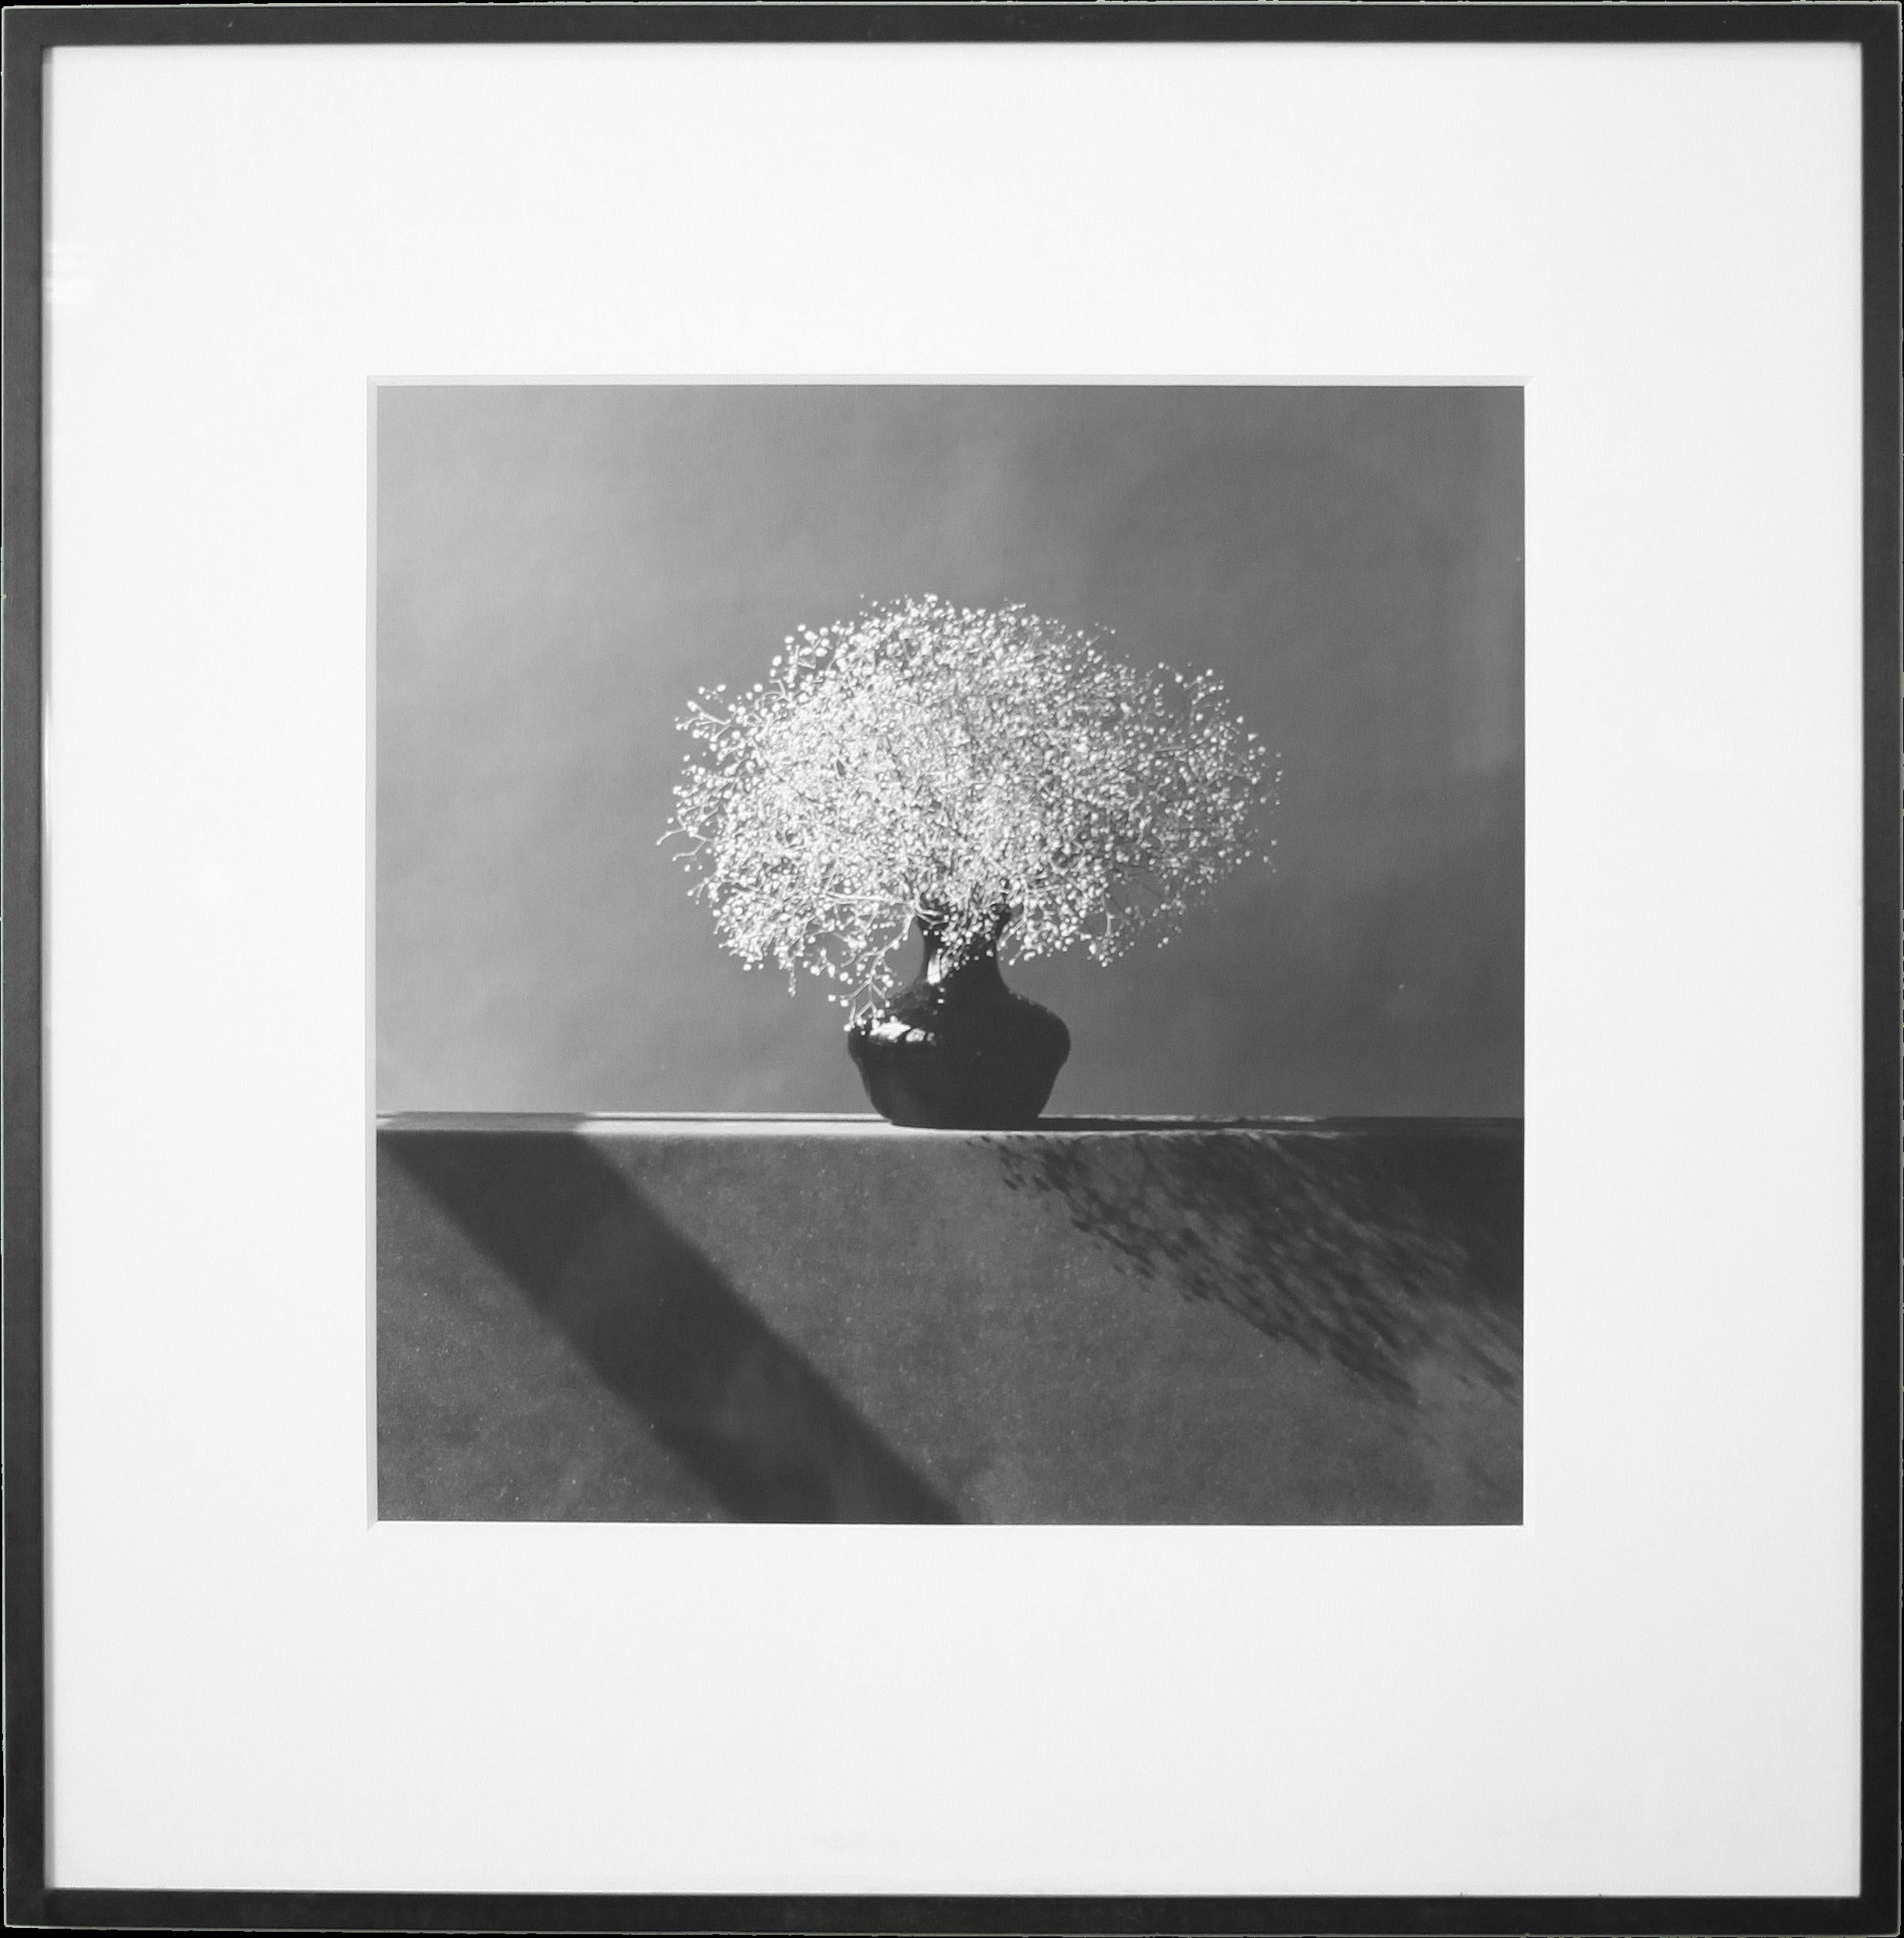 Robert Mapplethorpe ist zweifellos ein Gründungsvater der modernen Fotografie. Durch seine ikonischen Schwarz-Weiß-Bilder erlangte Mapplethorpe mit seinen oft umstrittenen Arbeiten sowohl Anerkennung als auch Berühmtheit. Themen wie Sexualität,